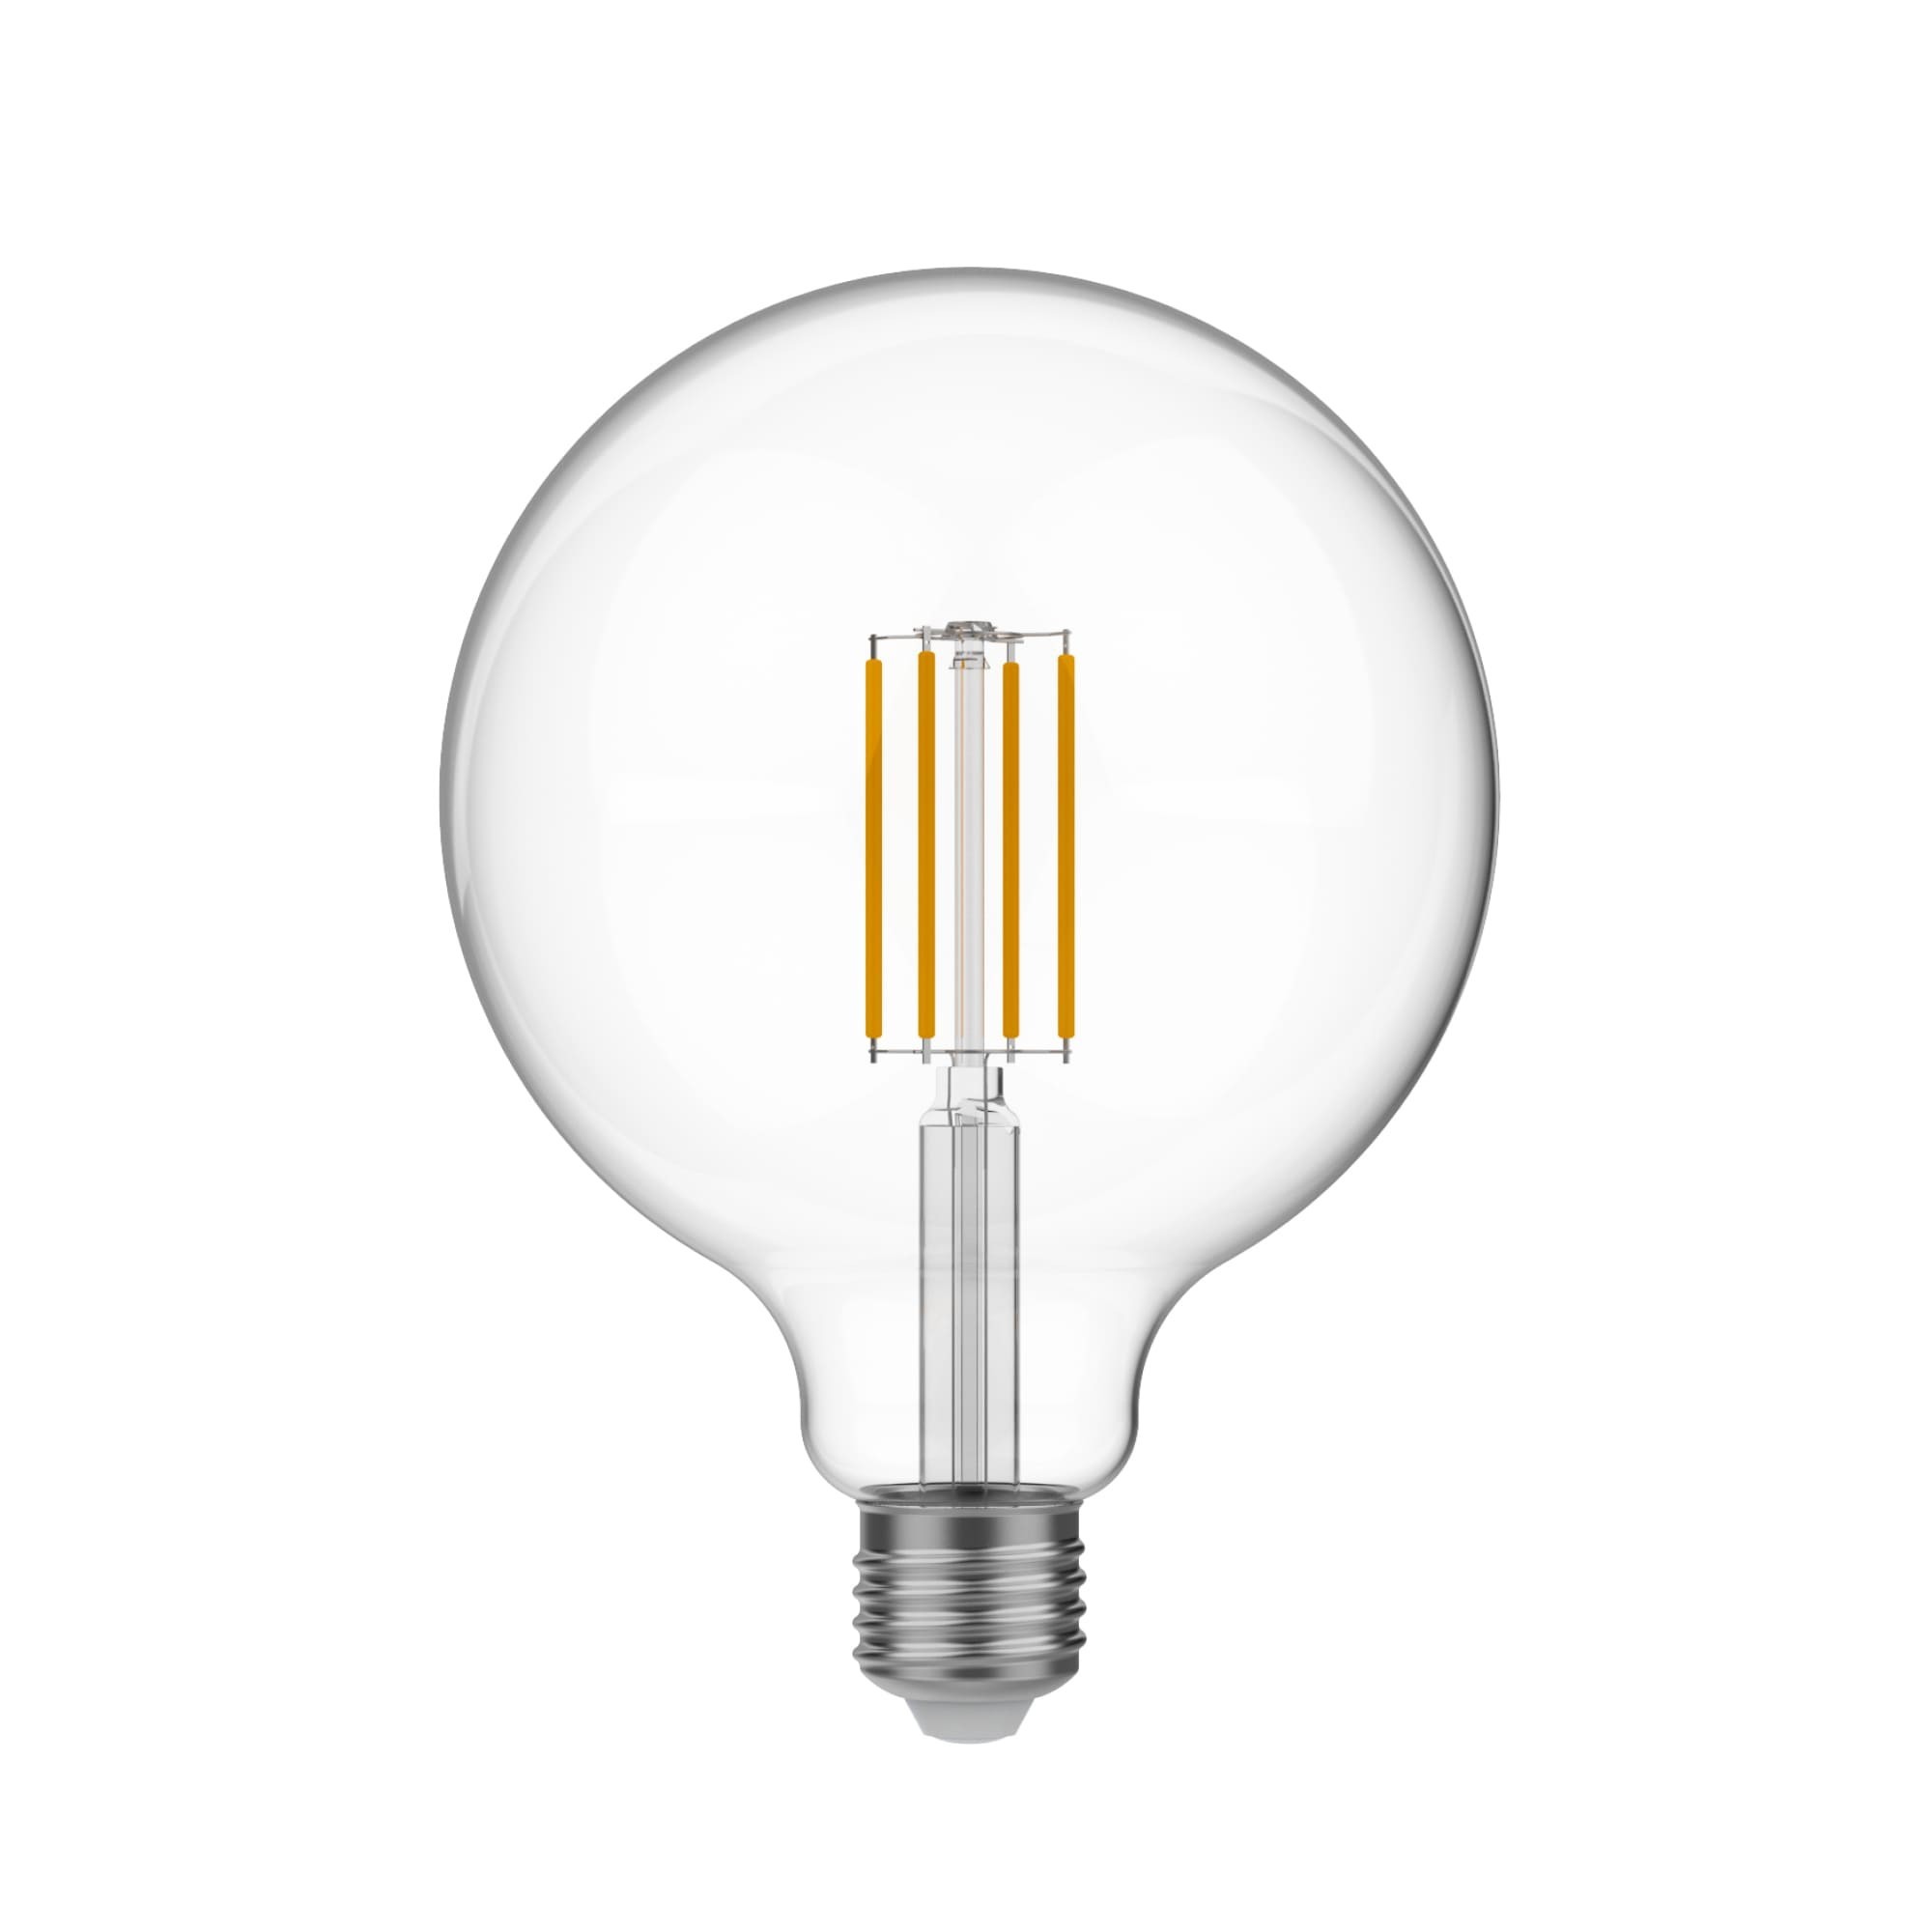 N04 - LED G125 Light Bulb, E27, 7W, 3500K, 806Lm, clear glass